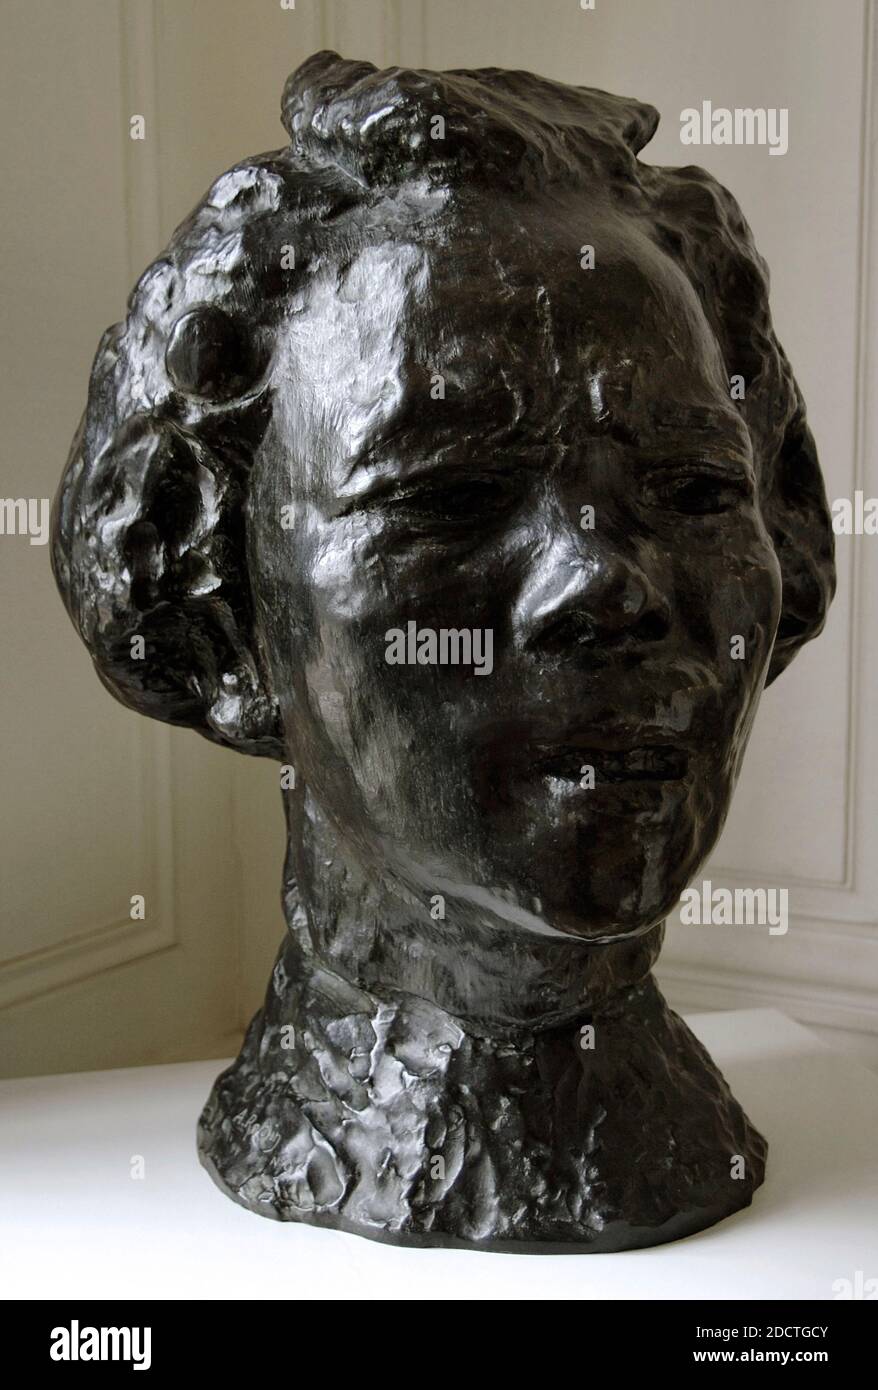 Auguste Rodin (1840-1917). Sculpteur français. Hanako (1868-1945). Grand masque de type D, 1907. Bronze. Fonderie de SUSE. Musée Rodin. Paris. France. Banque D'Images